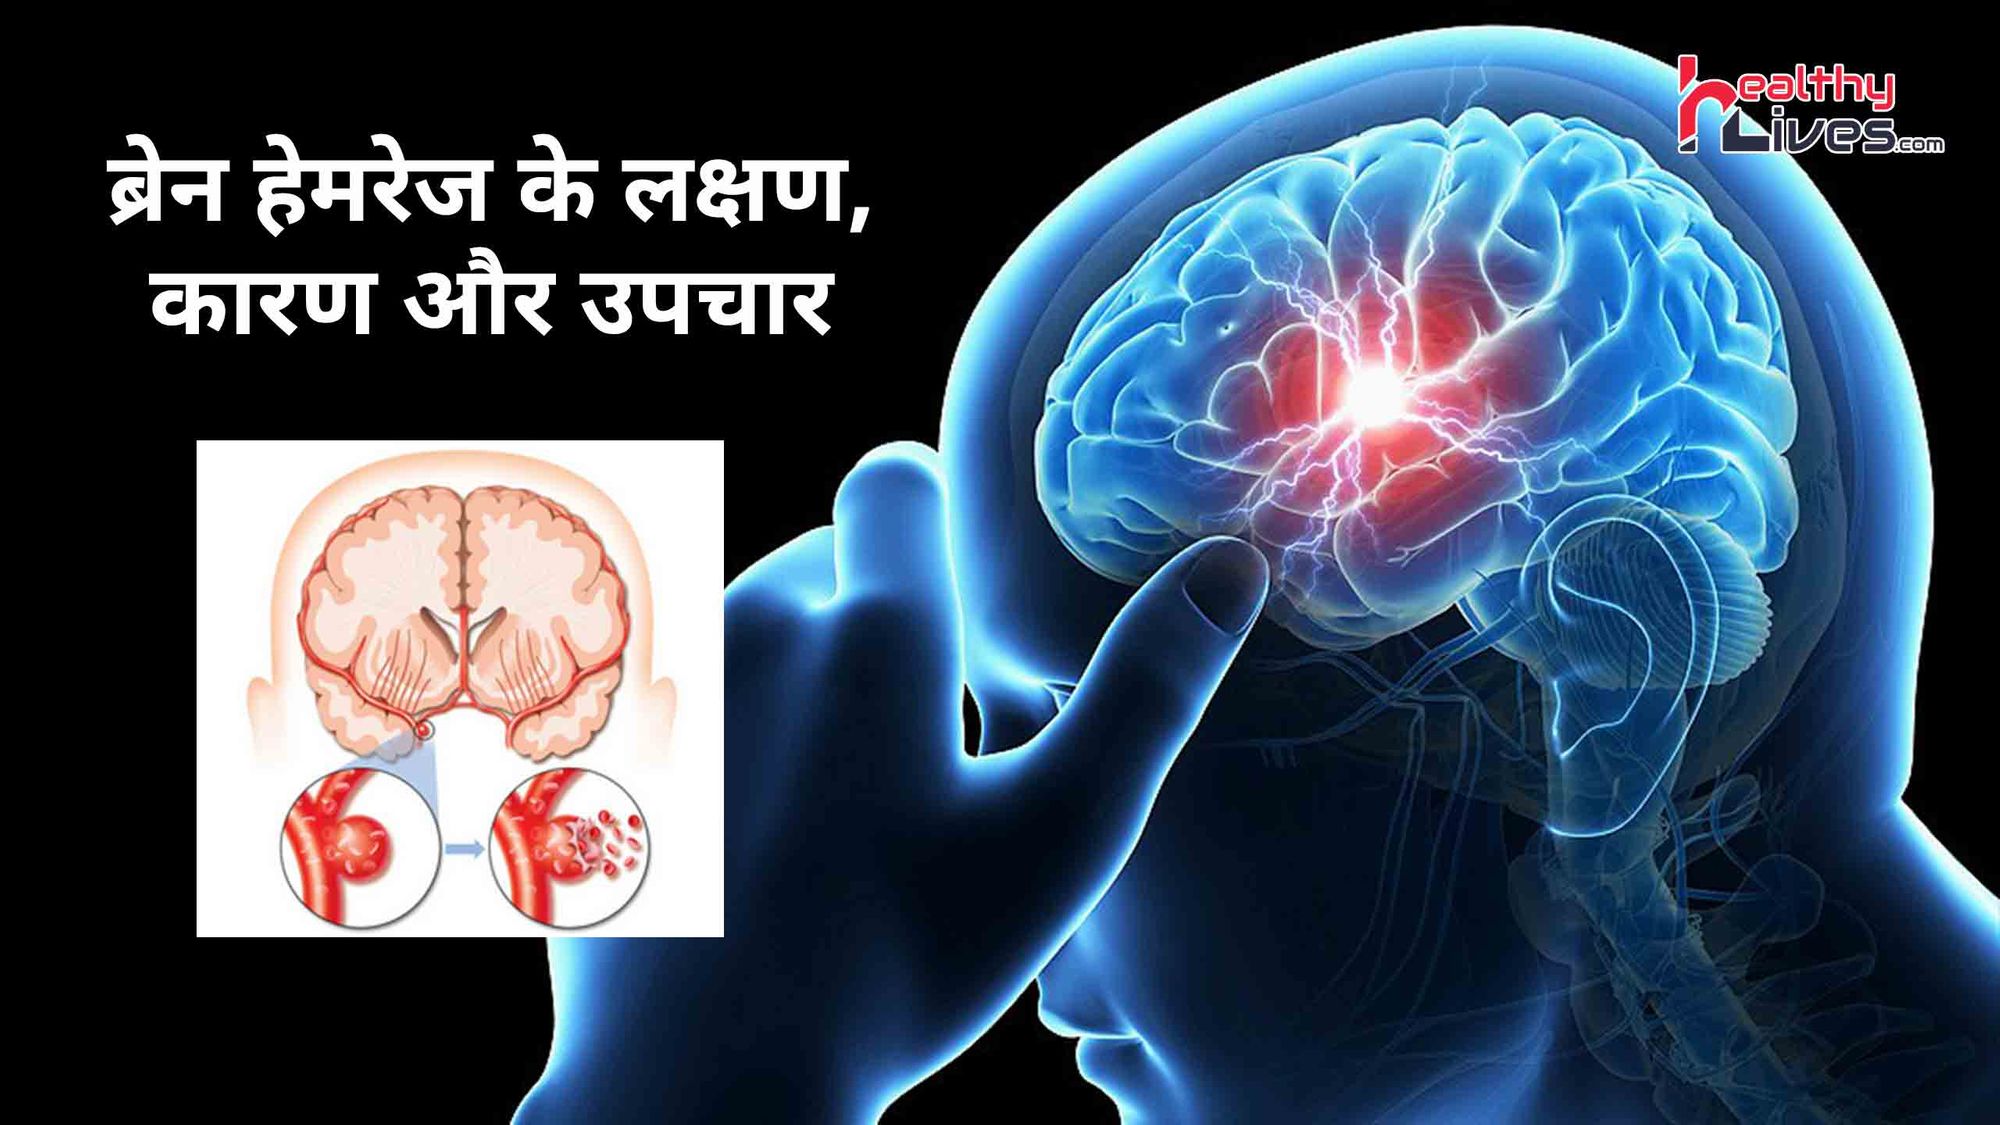 Brain Hemorrhage Ke Lakshan: ब्रेन हेमरेज के लक्षण पहचाने और खुद करे अपना बचाव